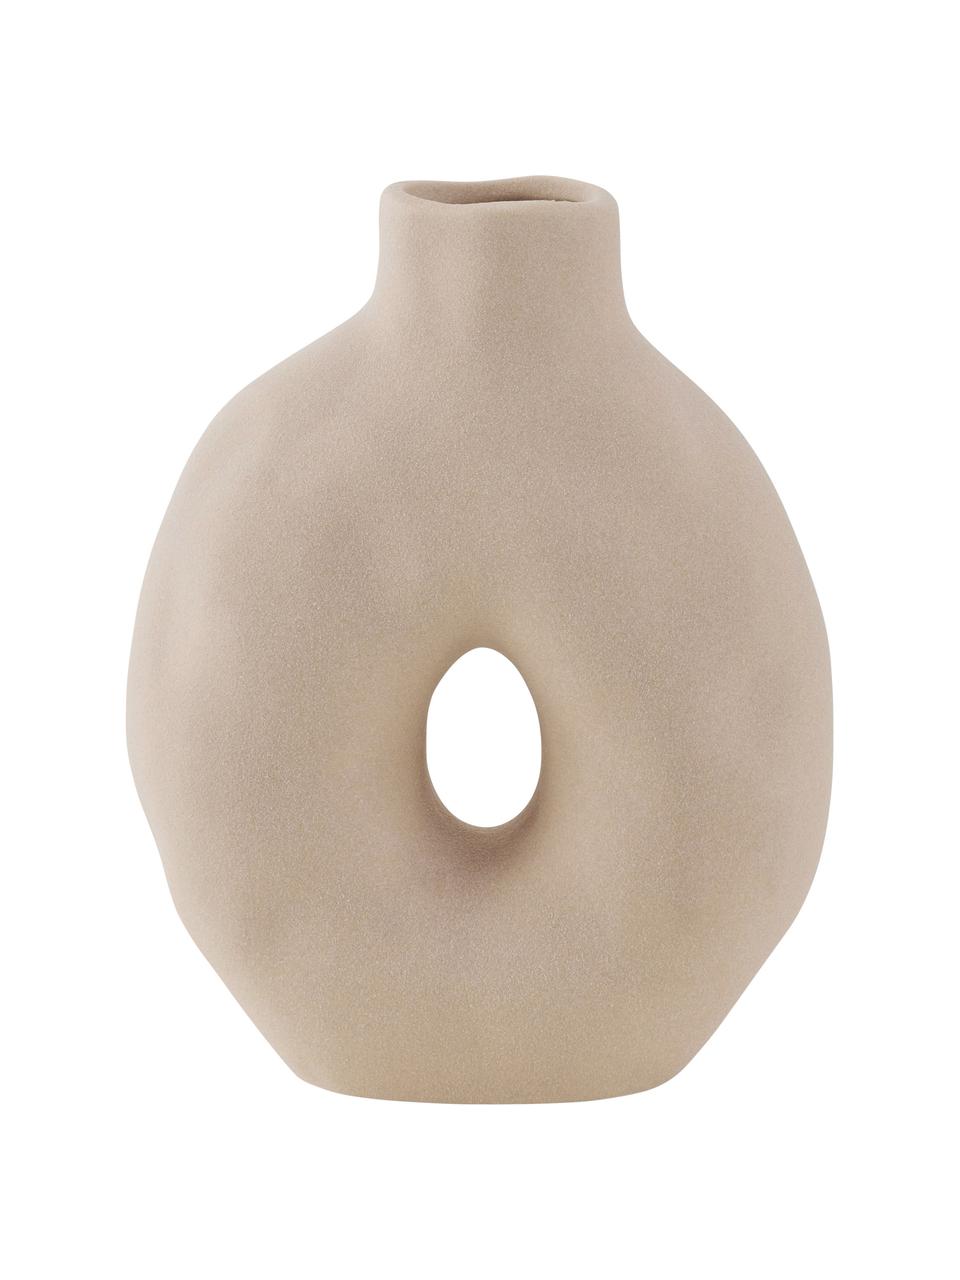 Porzellan-Vase Oshape in Beige, Porzellan, Beige, B 15 x H 20 cm